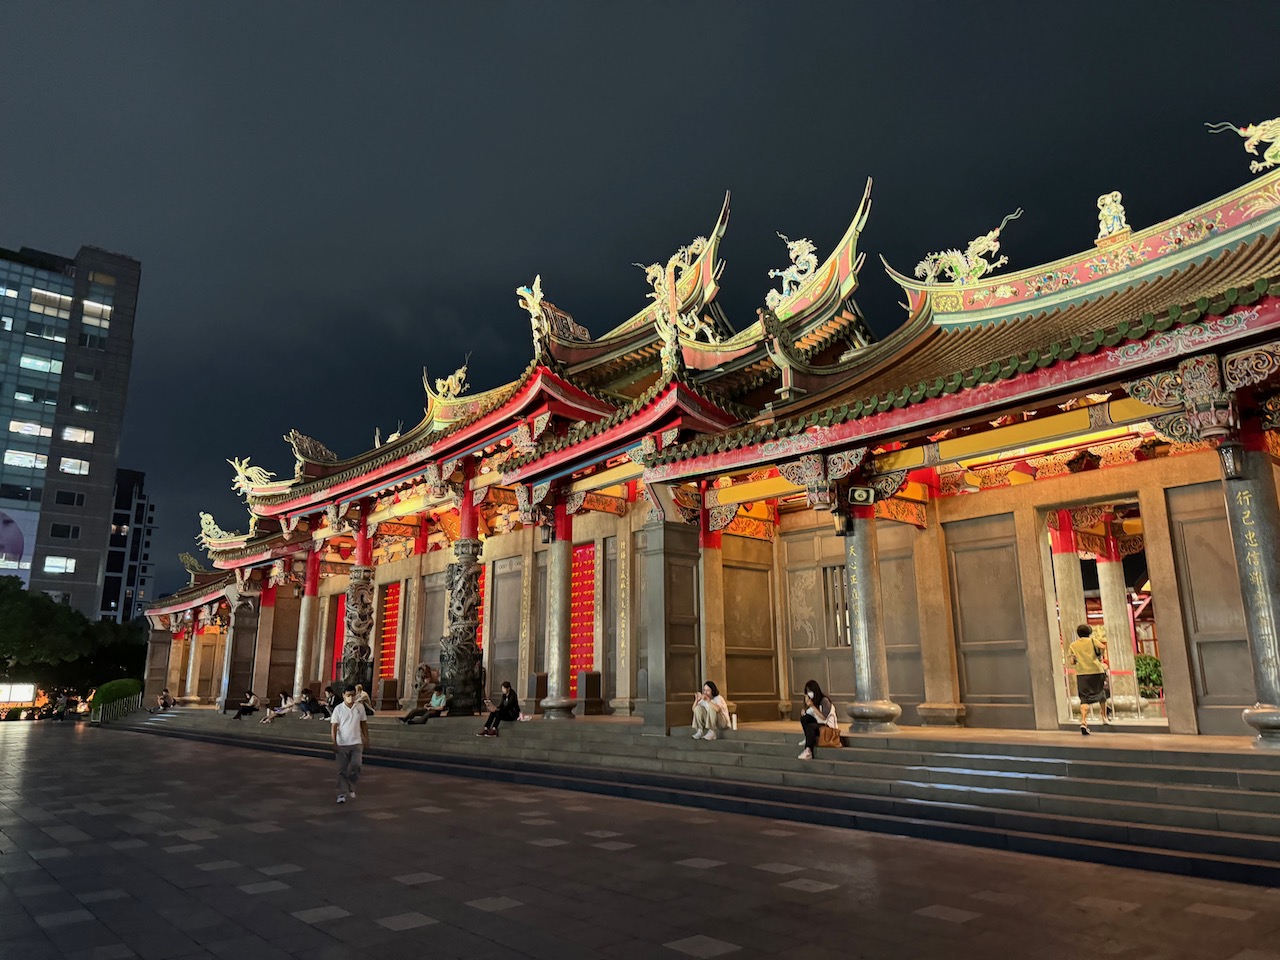 Xingtian temple at night